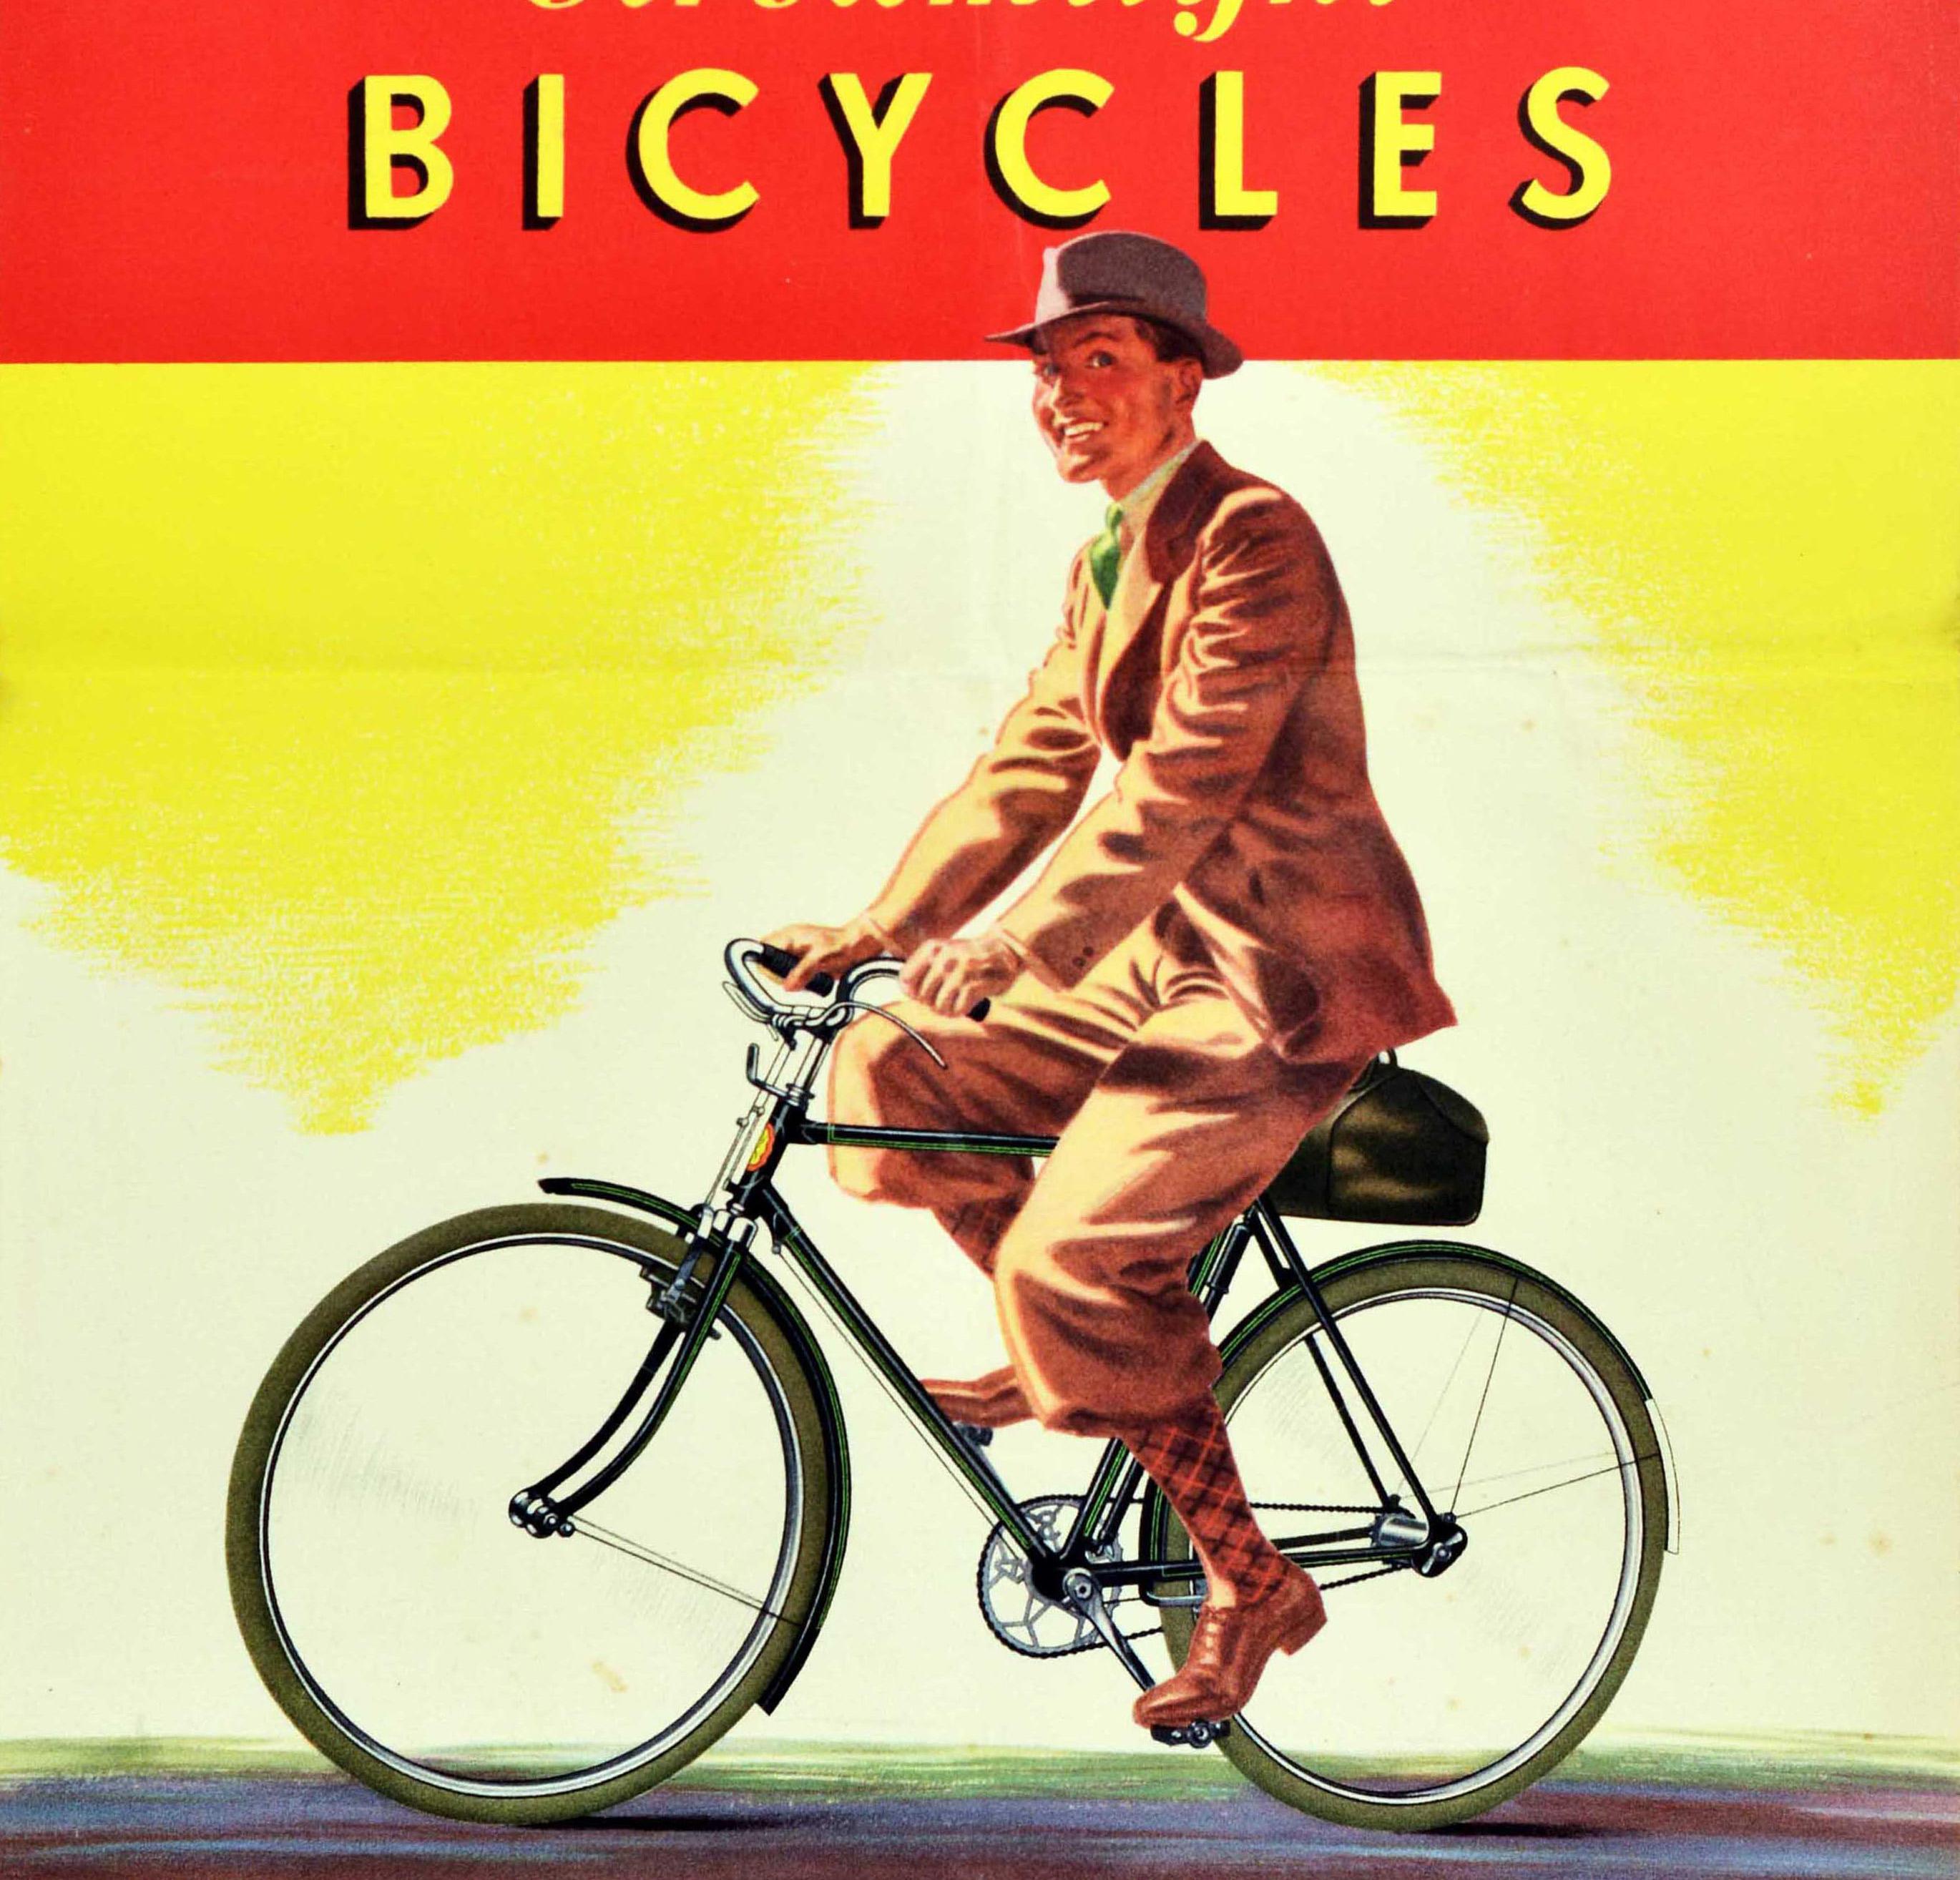 Affiche publicitaire originale pour BSA Streamlight Bicycles, représentant un cycliste élégamment vêtu, souriant au spectateur alors qu'il roule sur son nouveau vélo, sous le texte en caractères jaunes gras sur fond rouge. Fondée en 1861, la